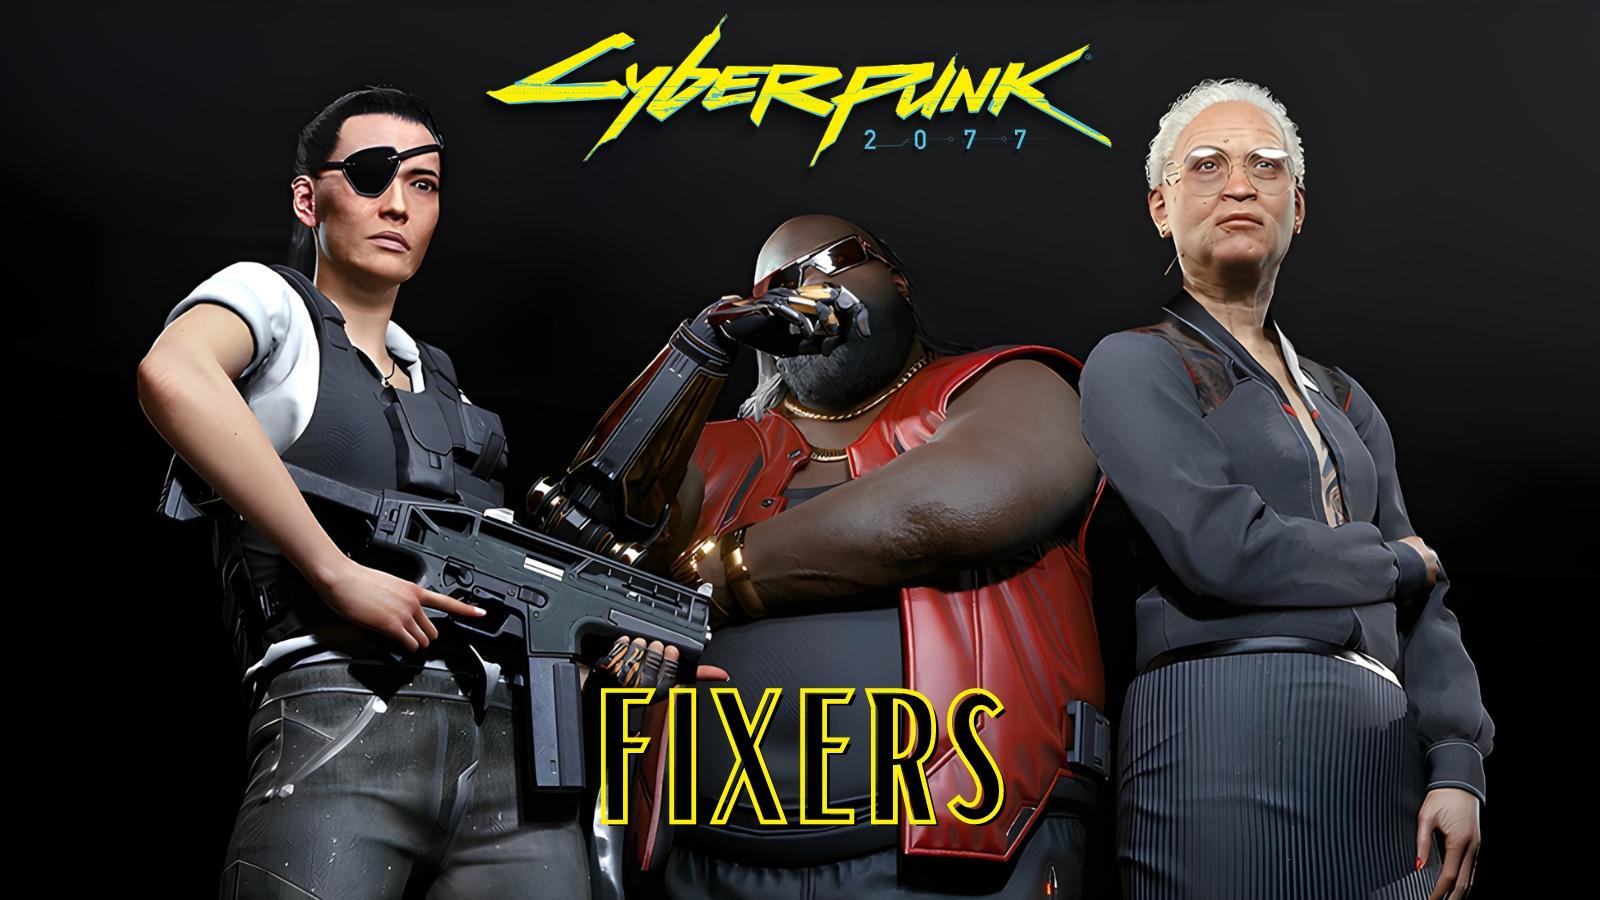 Regina, Dexter and Wakako Fixers in Cyberpunk 2077